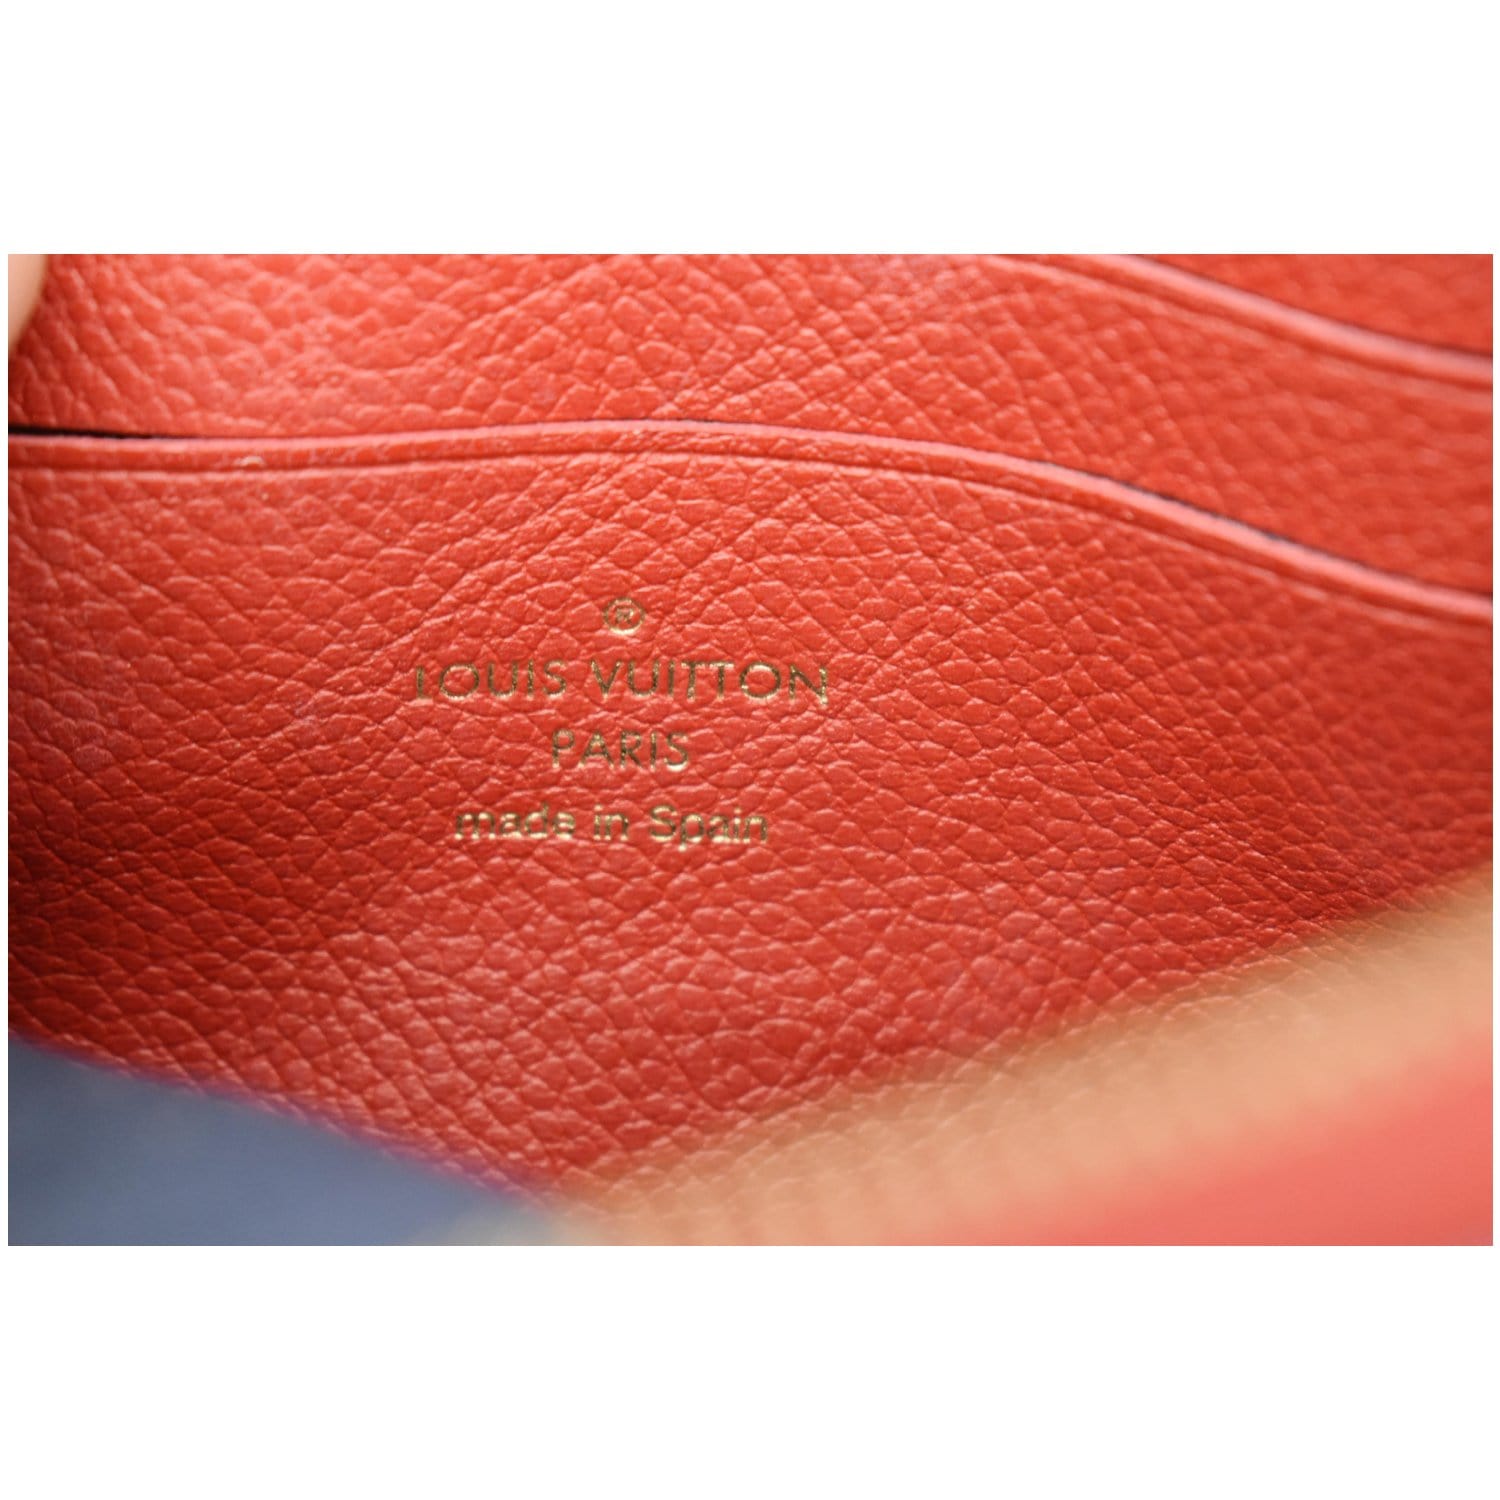 Brand New Louis Vuitton Double Zip Pochette In Pink Monogram Empreinte  Leather